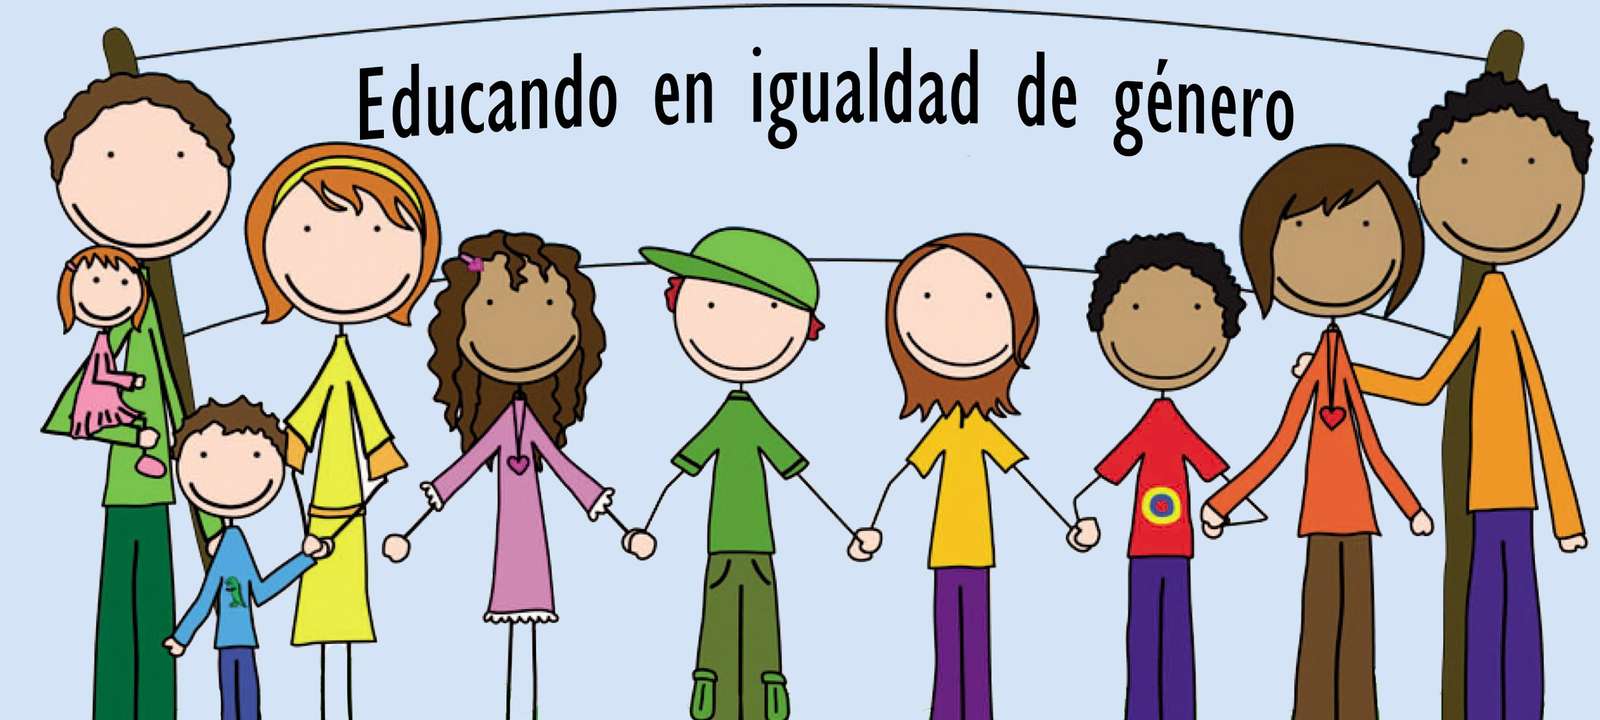 Educando en igualdad de género pussel online från foto